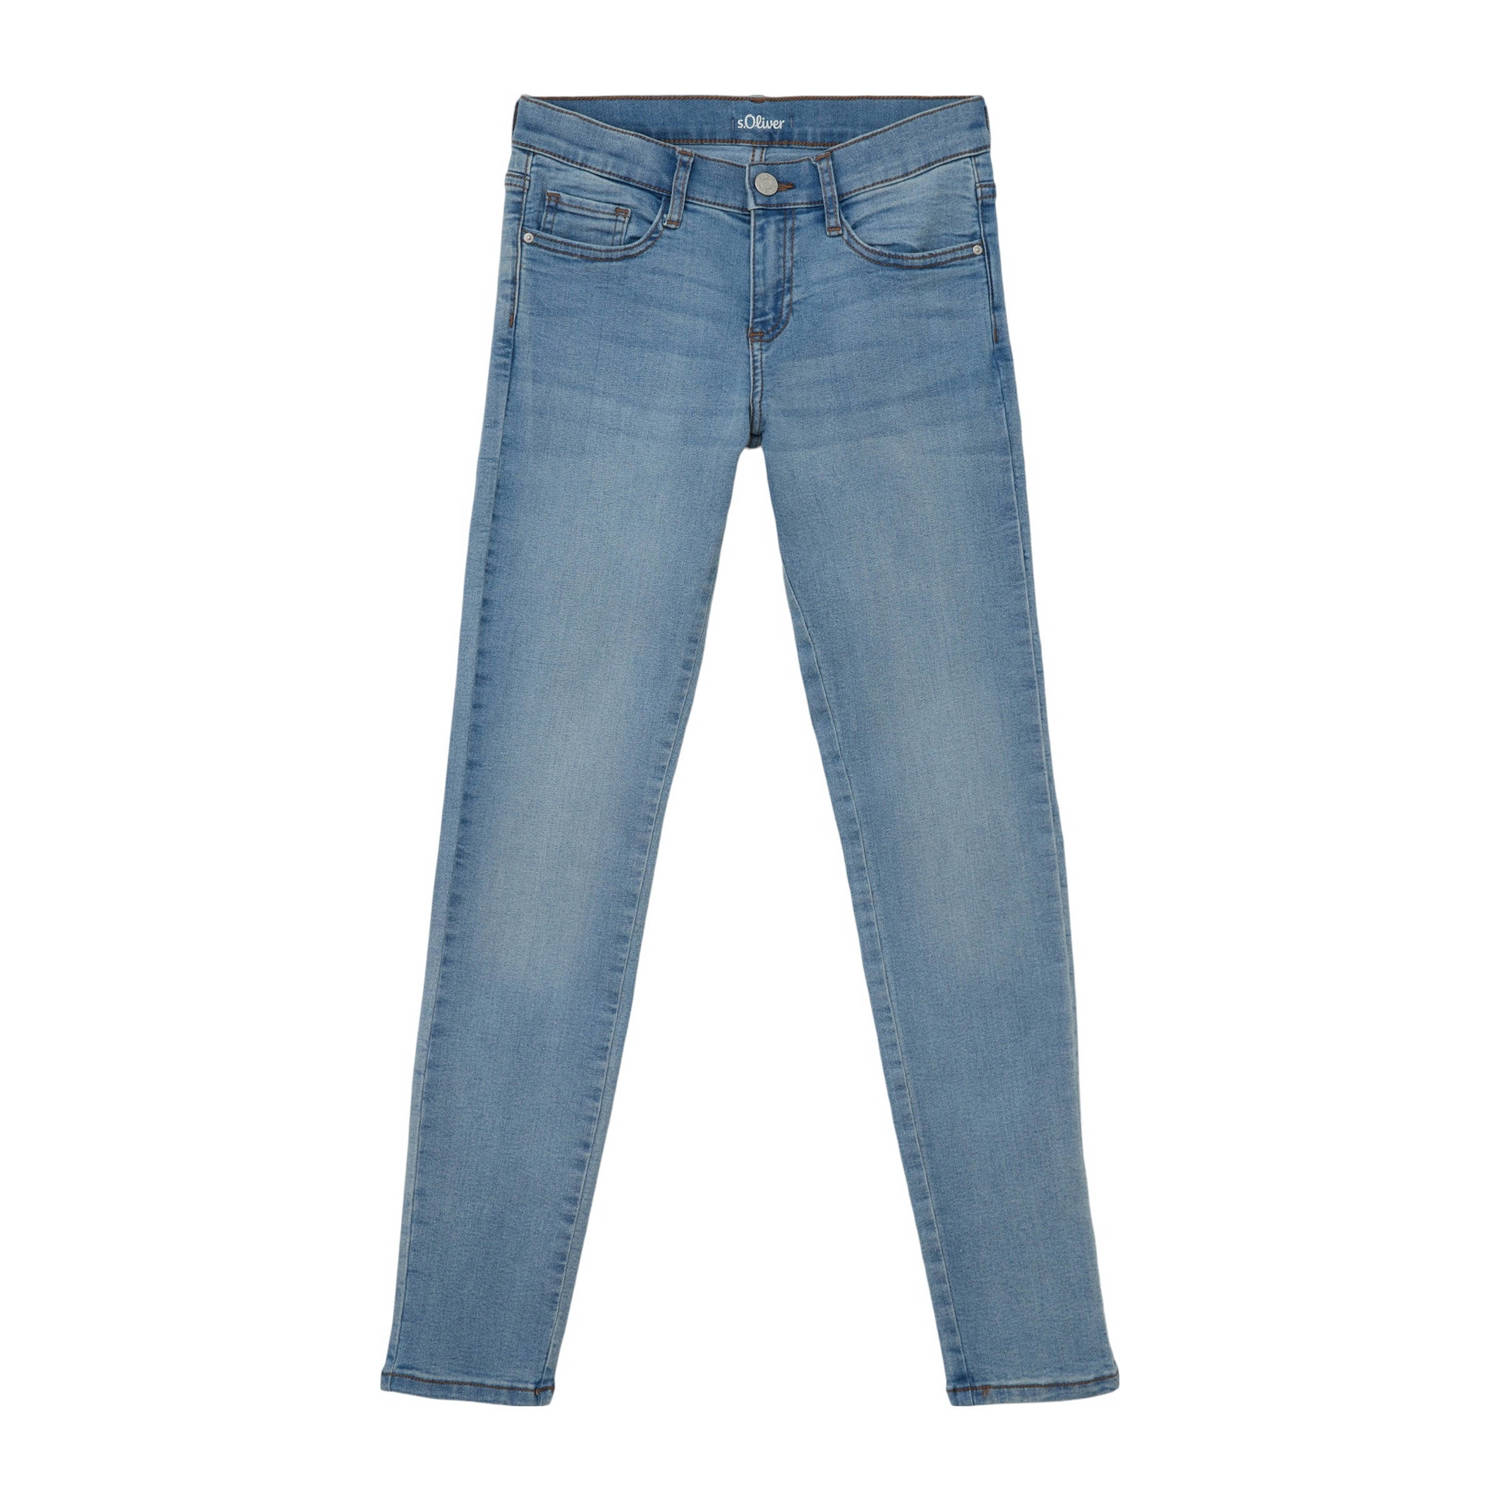 s.Oliver regular fit jeans light blue denim